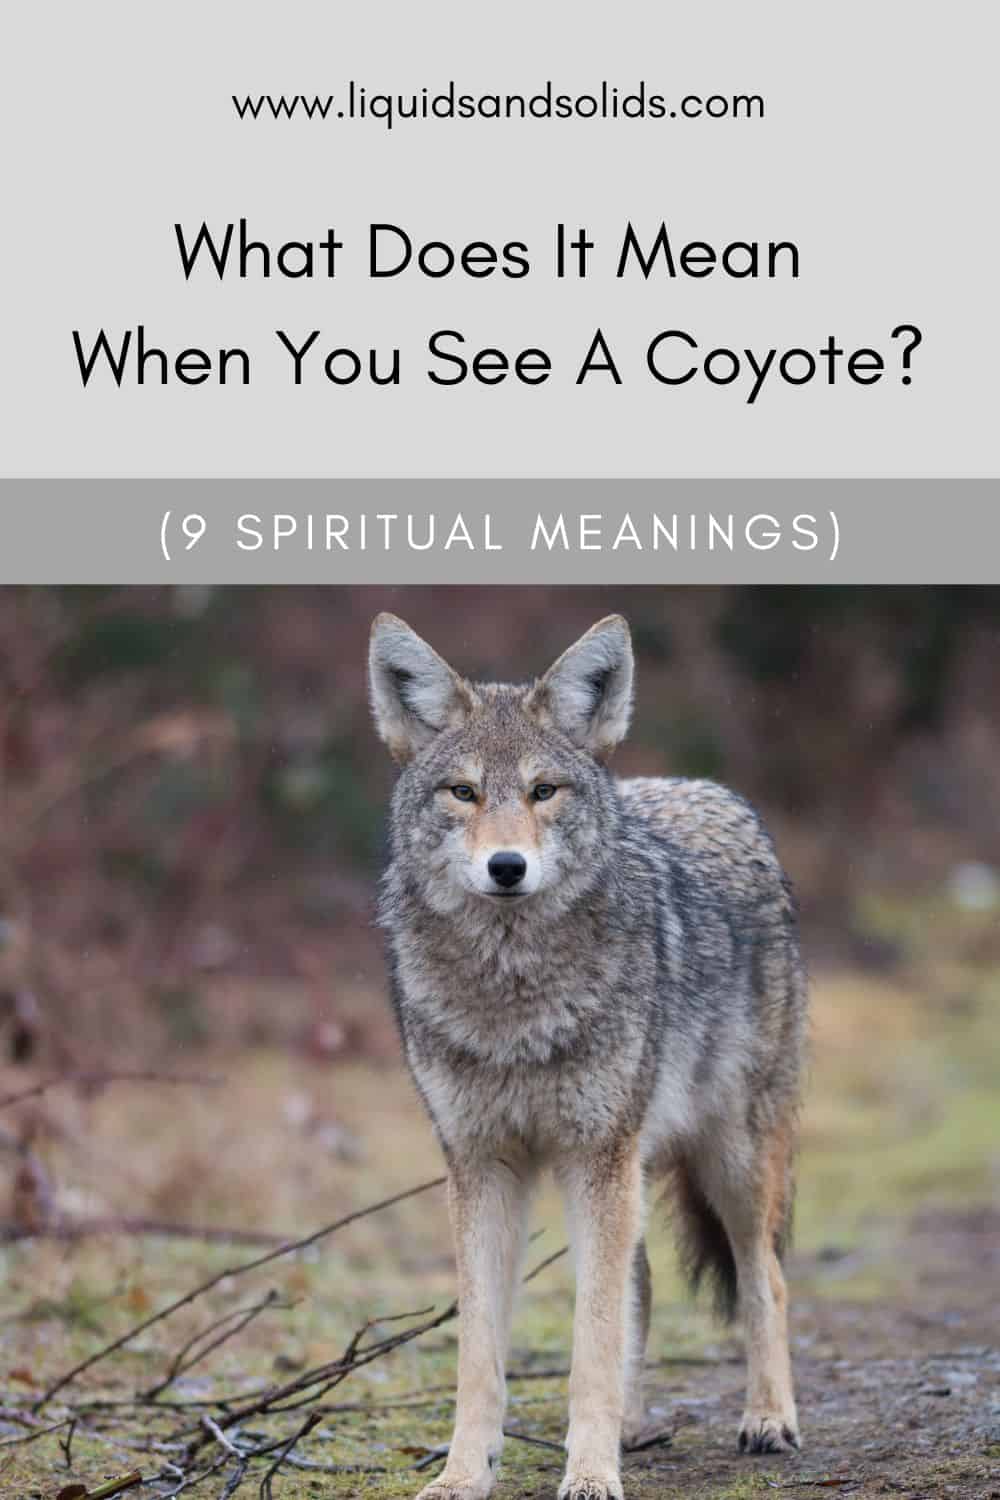  ماذا يعني أن ترى ذئبًا؟ (9 معاني روحية)